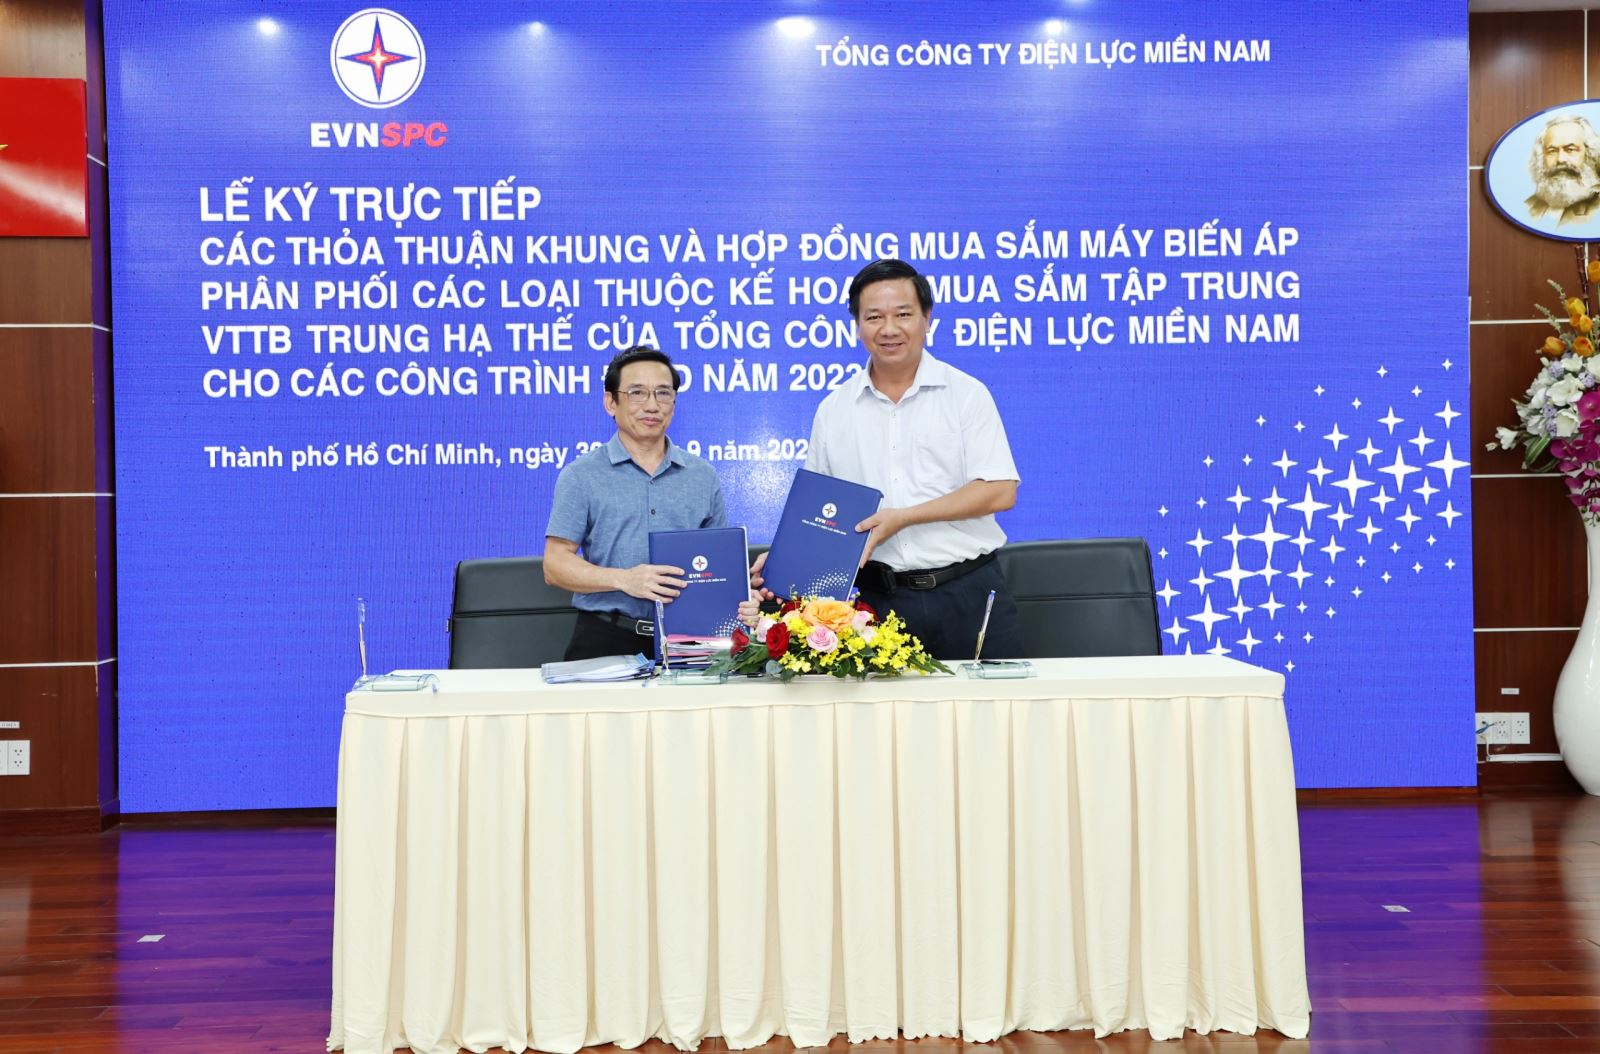 Ông Lê Hoàng Oanh – Giám đốc Công ty Điện lực Long An (áo trắng) ký hợp đồng với Công ty Cổ phần Chế tạo Thiết bị Điện Việt Nam (Havec) cho Gói thầu số 1 - Máy biến áp phân phối 1 pha (25kVA – 37,5 kVA). Ảnh: EVNSPC